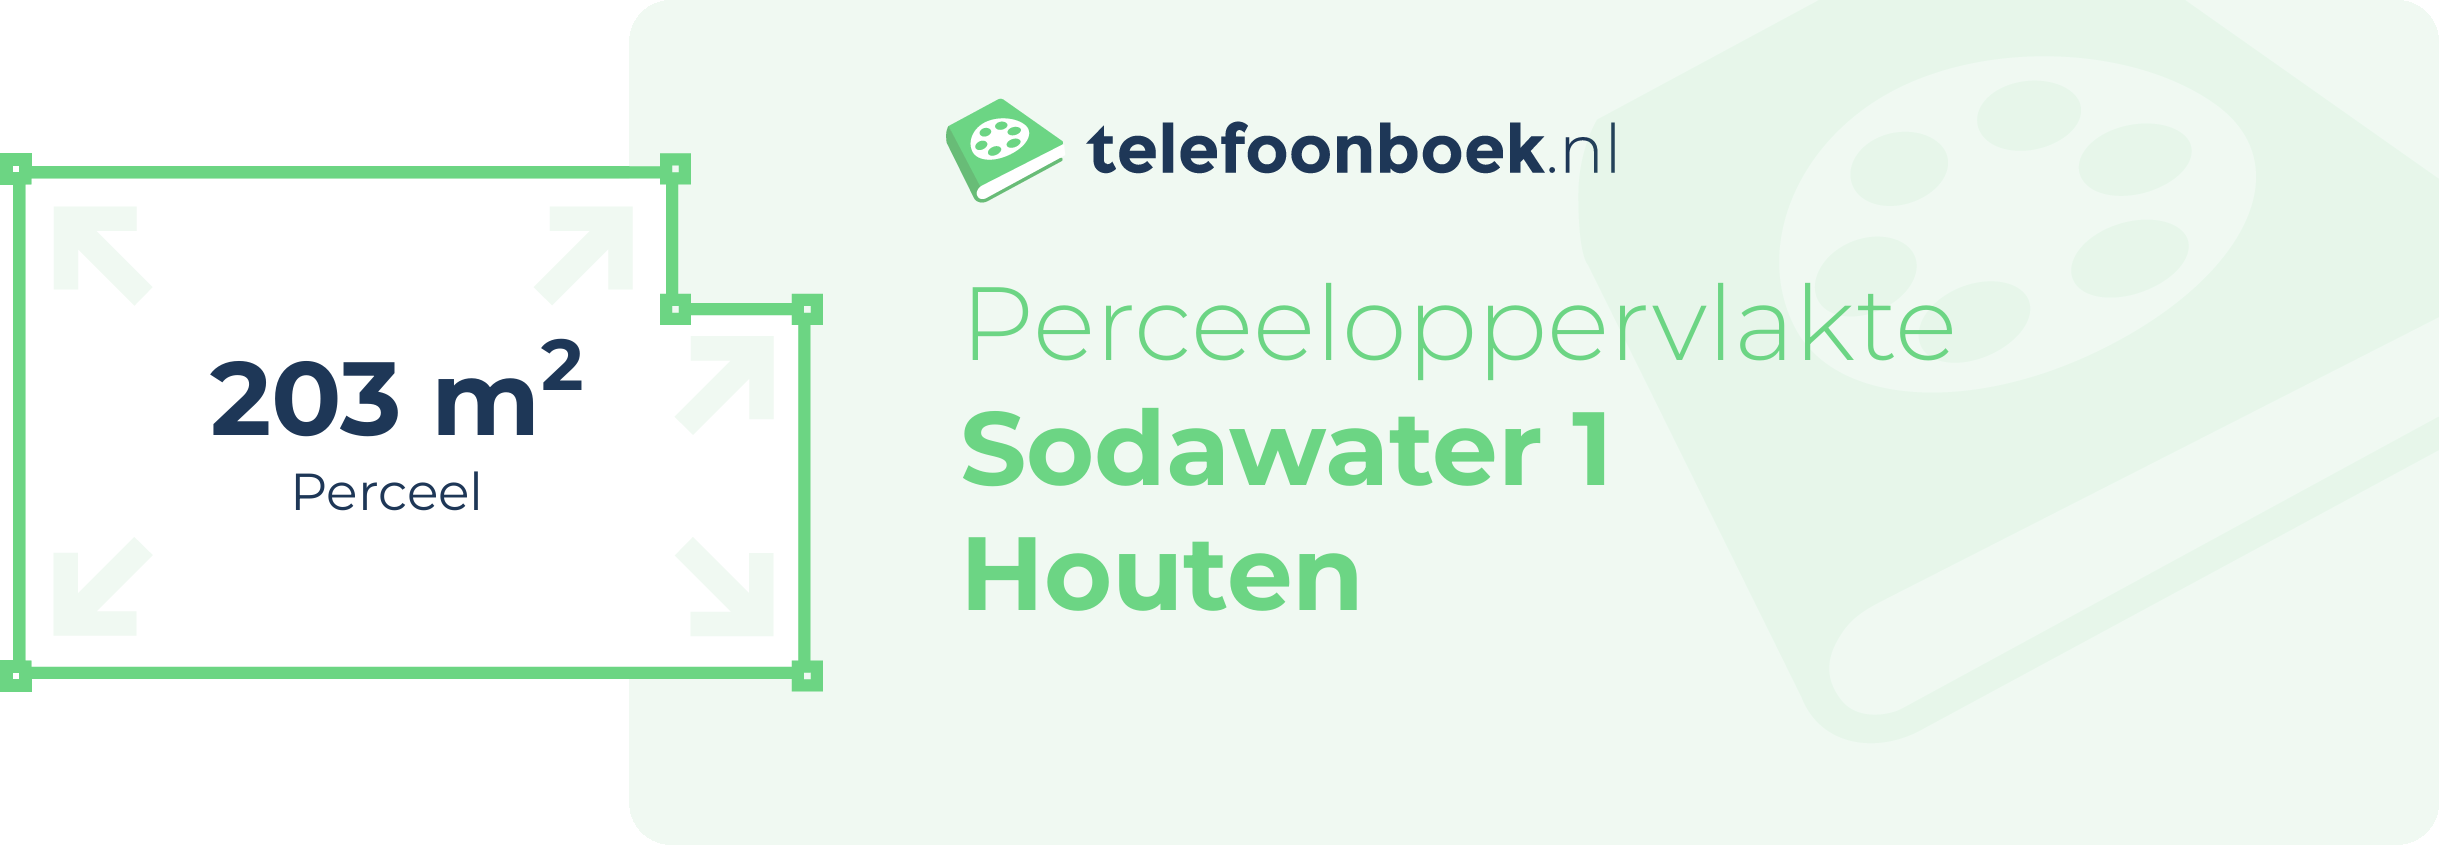 Perceeloppervlakte Sodawater 1 Houten